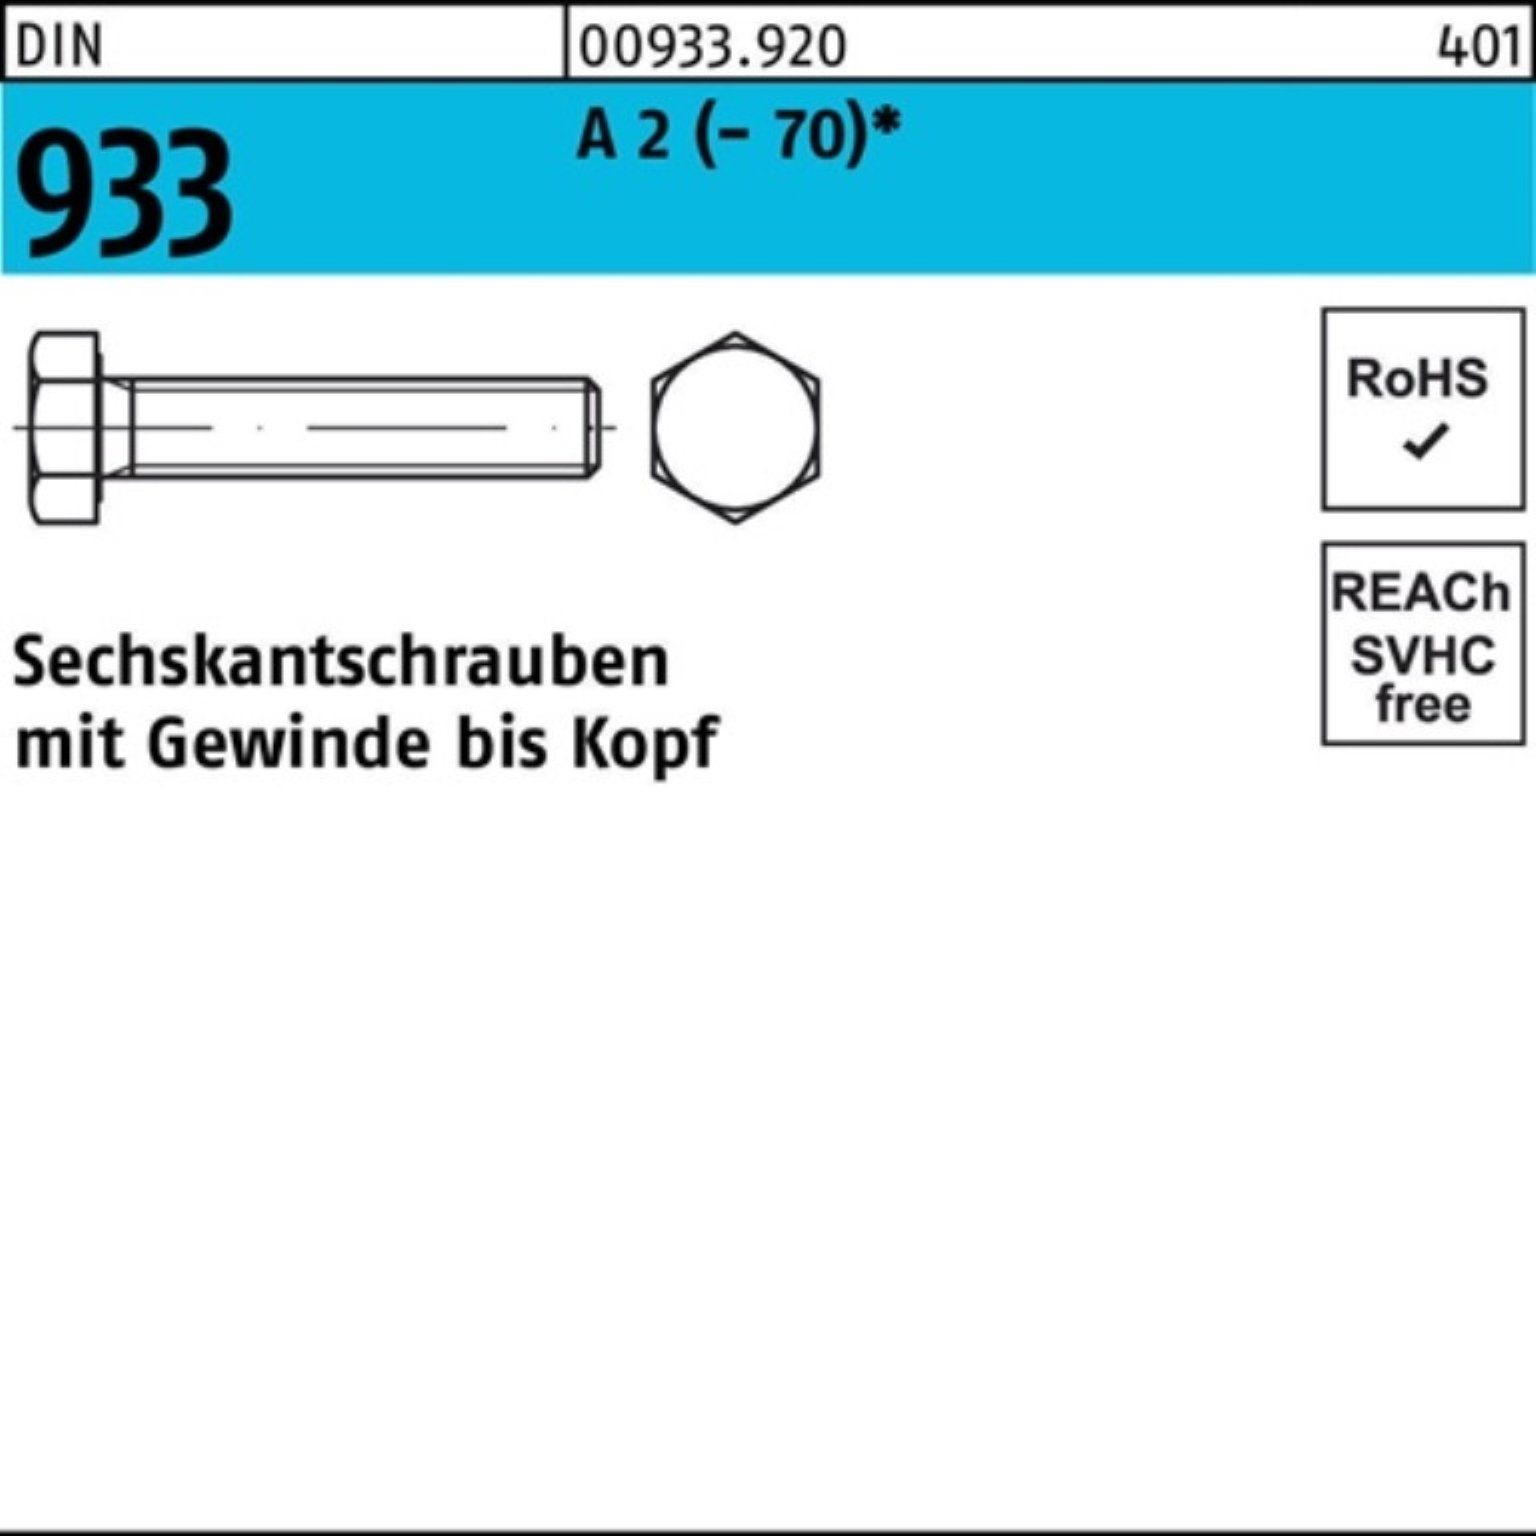 Reyher Sechskantschraube 200er Pack Sechskantschraube DIN 933 VG M8x 22 A 2 (70) 200 Stück D